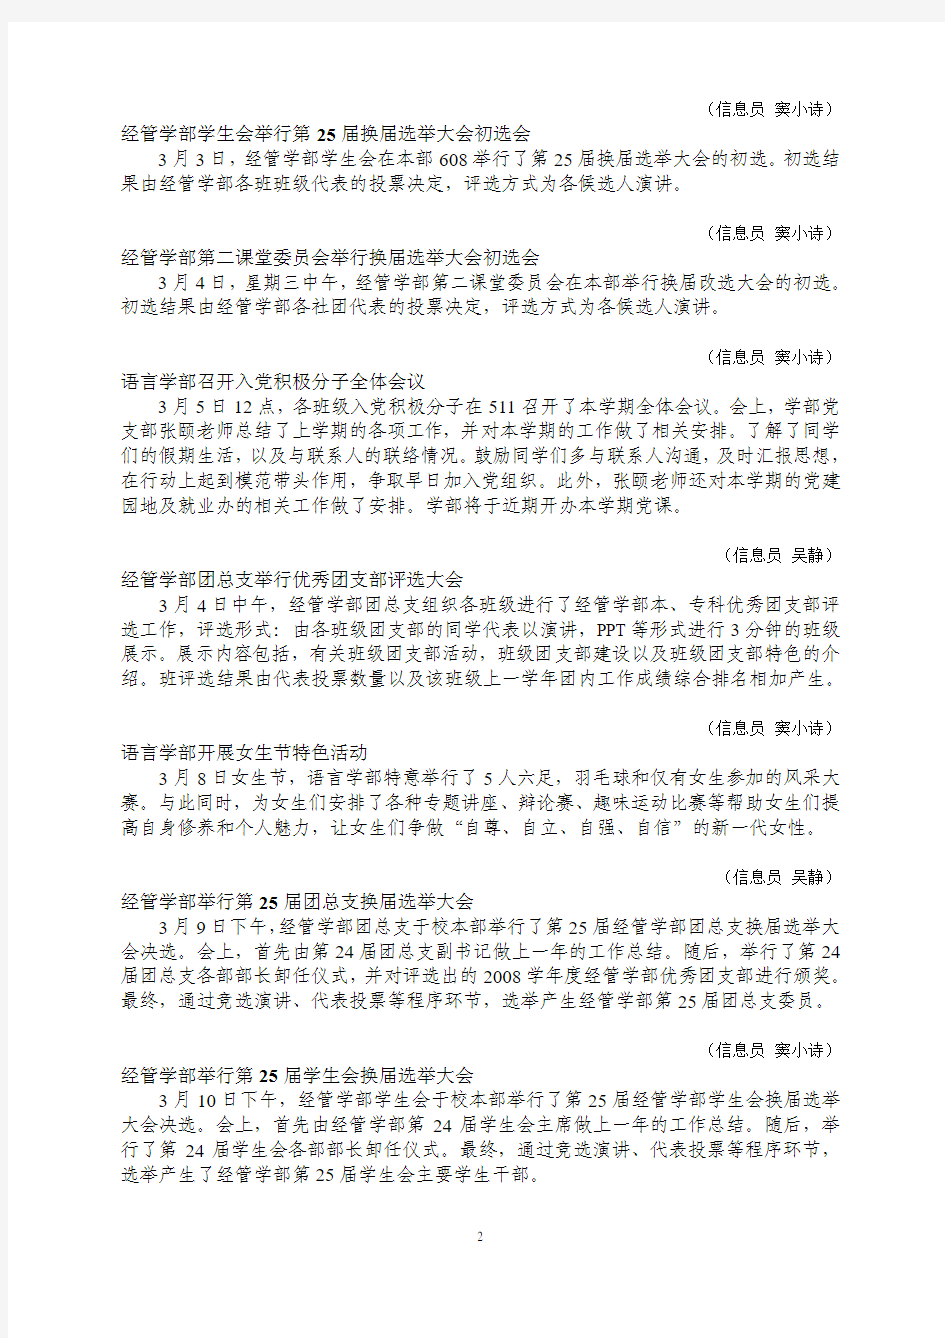 北京城市学院团委工作信息简报第六期北京城市学院